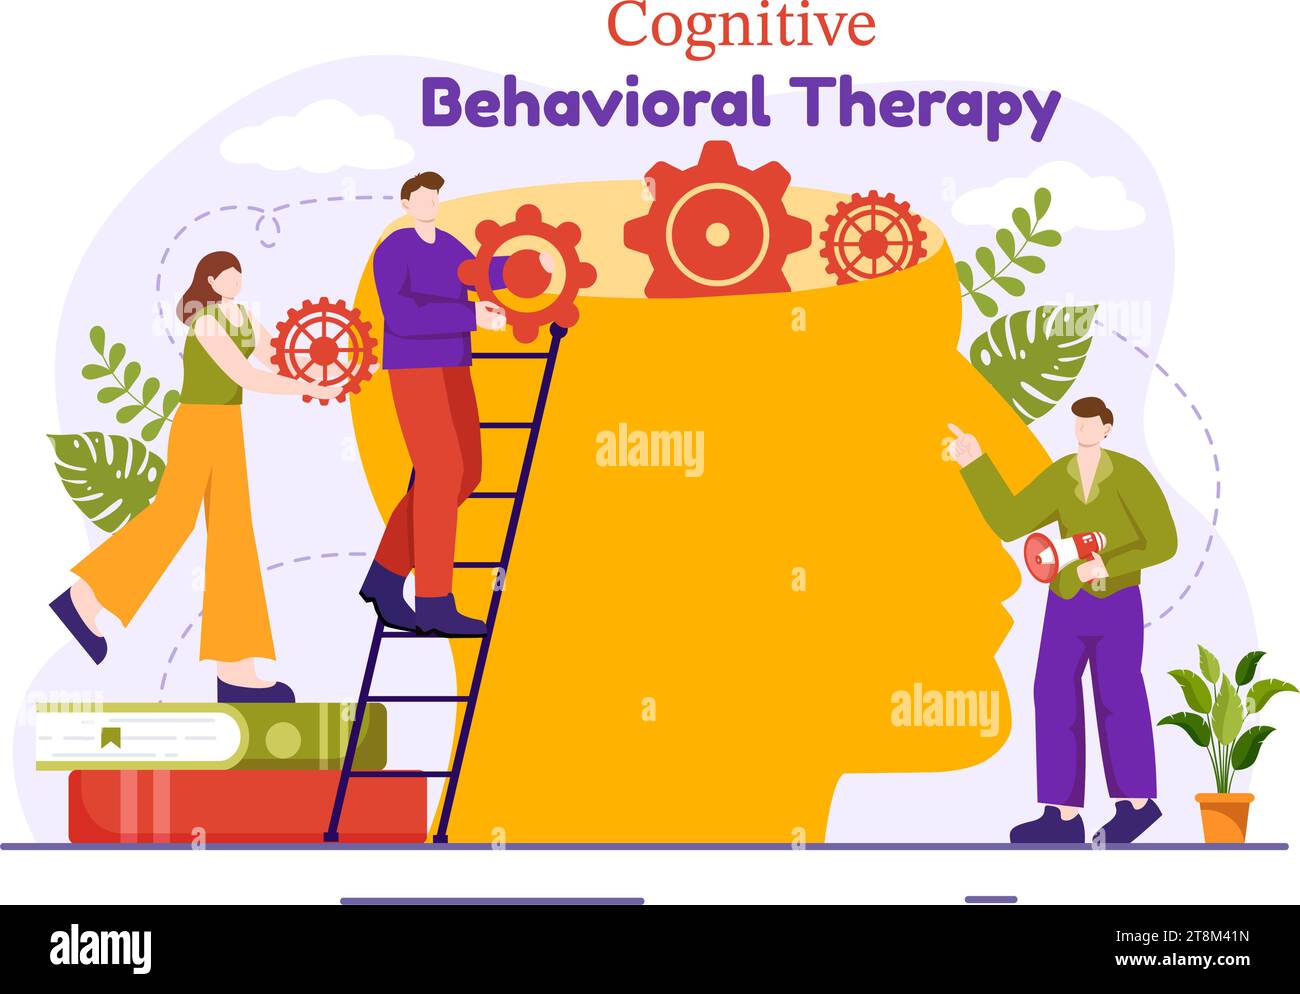 CBT oder kognitive Verhaltenstherapie Vektor-Illustration mit Person Verwalten Sie ihre Probleme Emotionen, Depression oder Mindset im Hintergrund der psychischen Gesundheit Stock Vektor